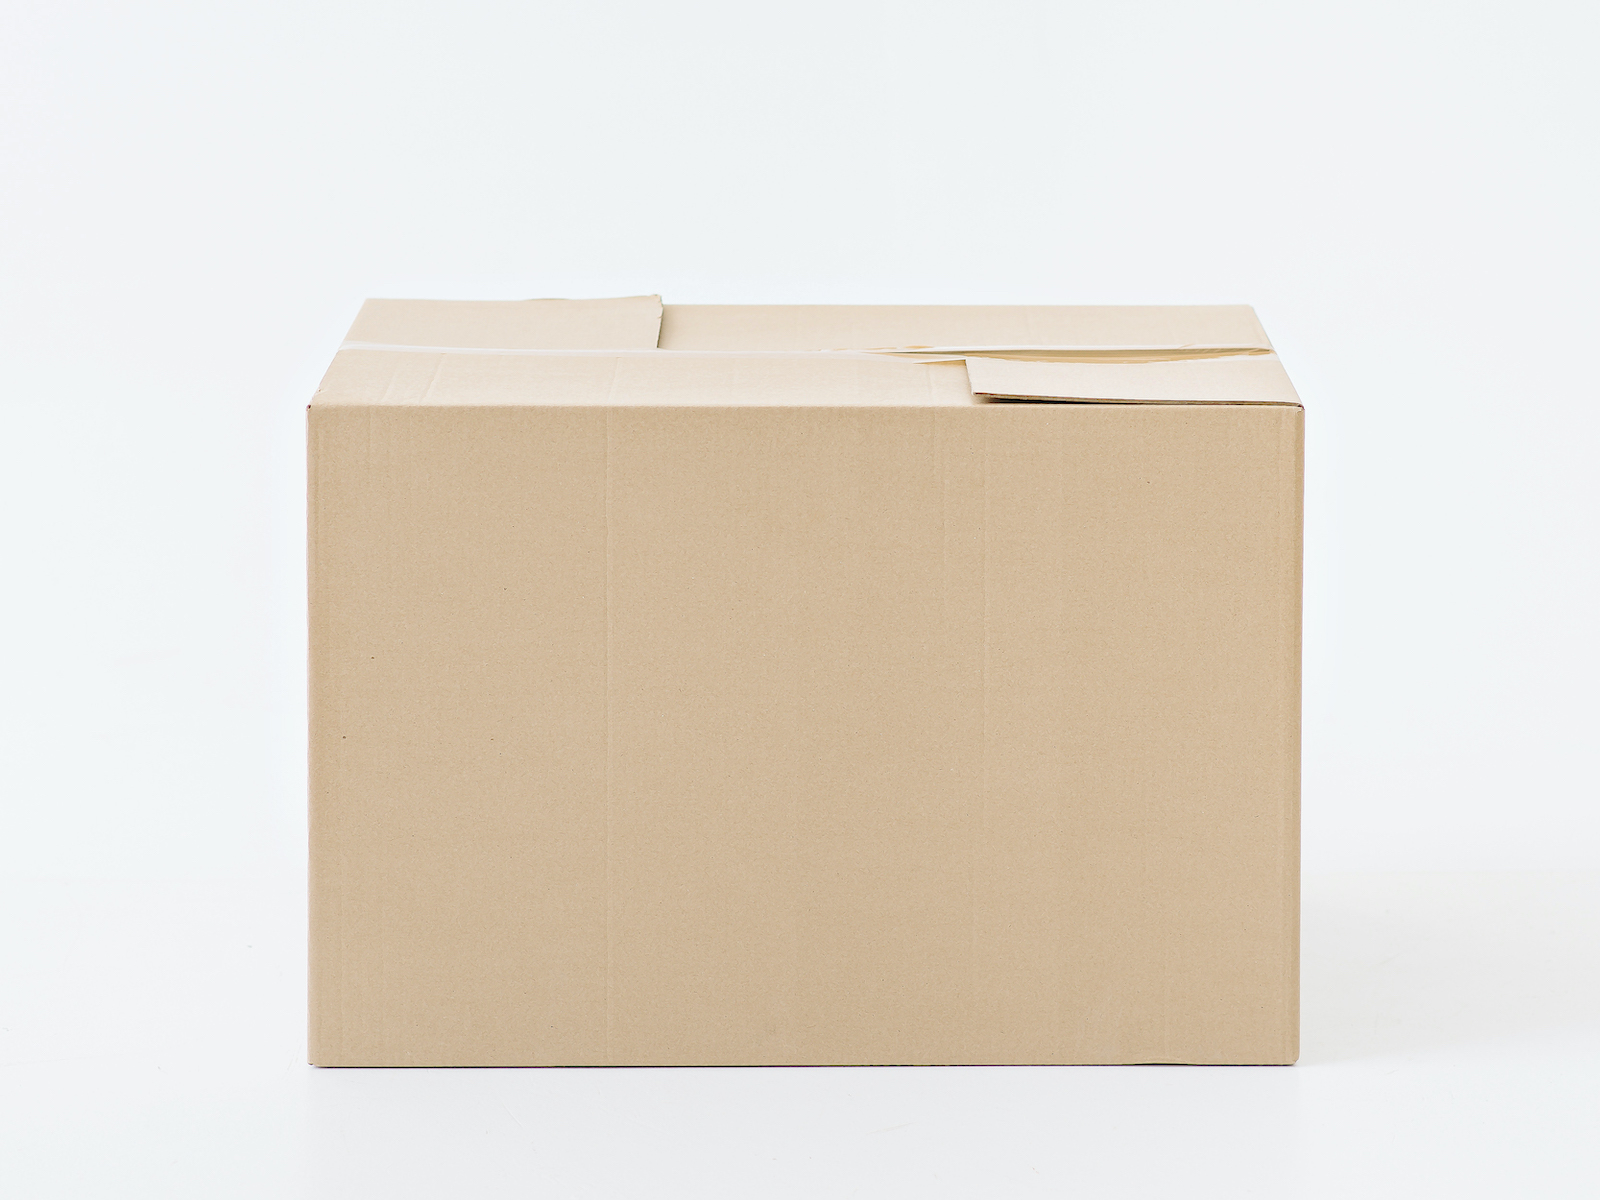 Коробка для переезда. 60 Х 40 мм коробка. 150 60 40 Мм коробка. Переезд коробки скотч.